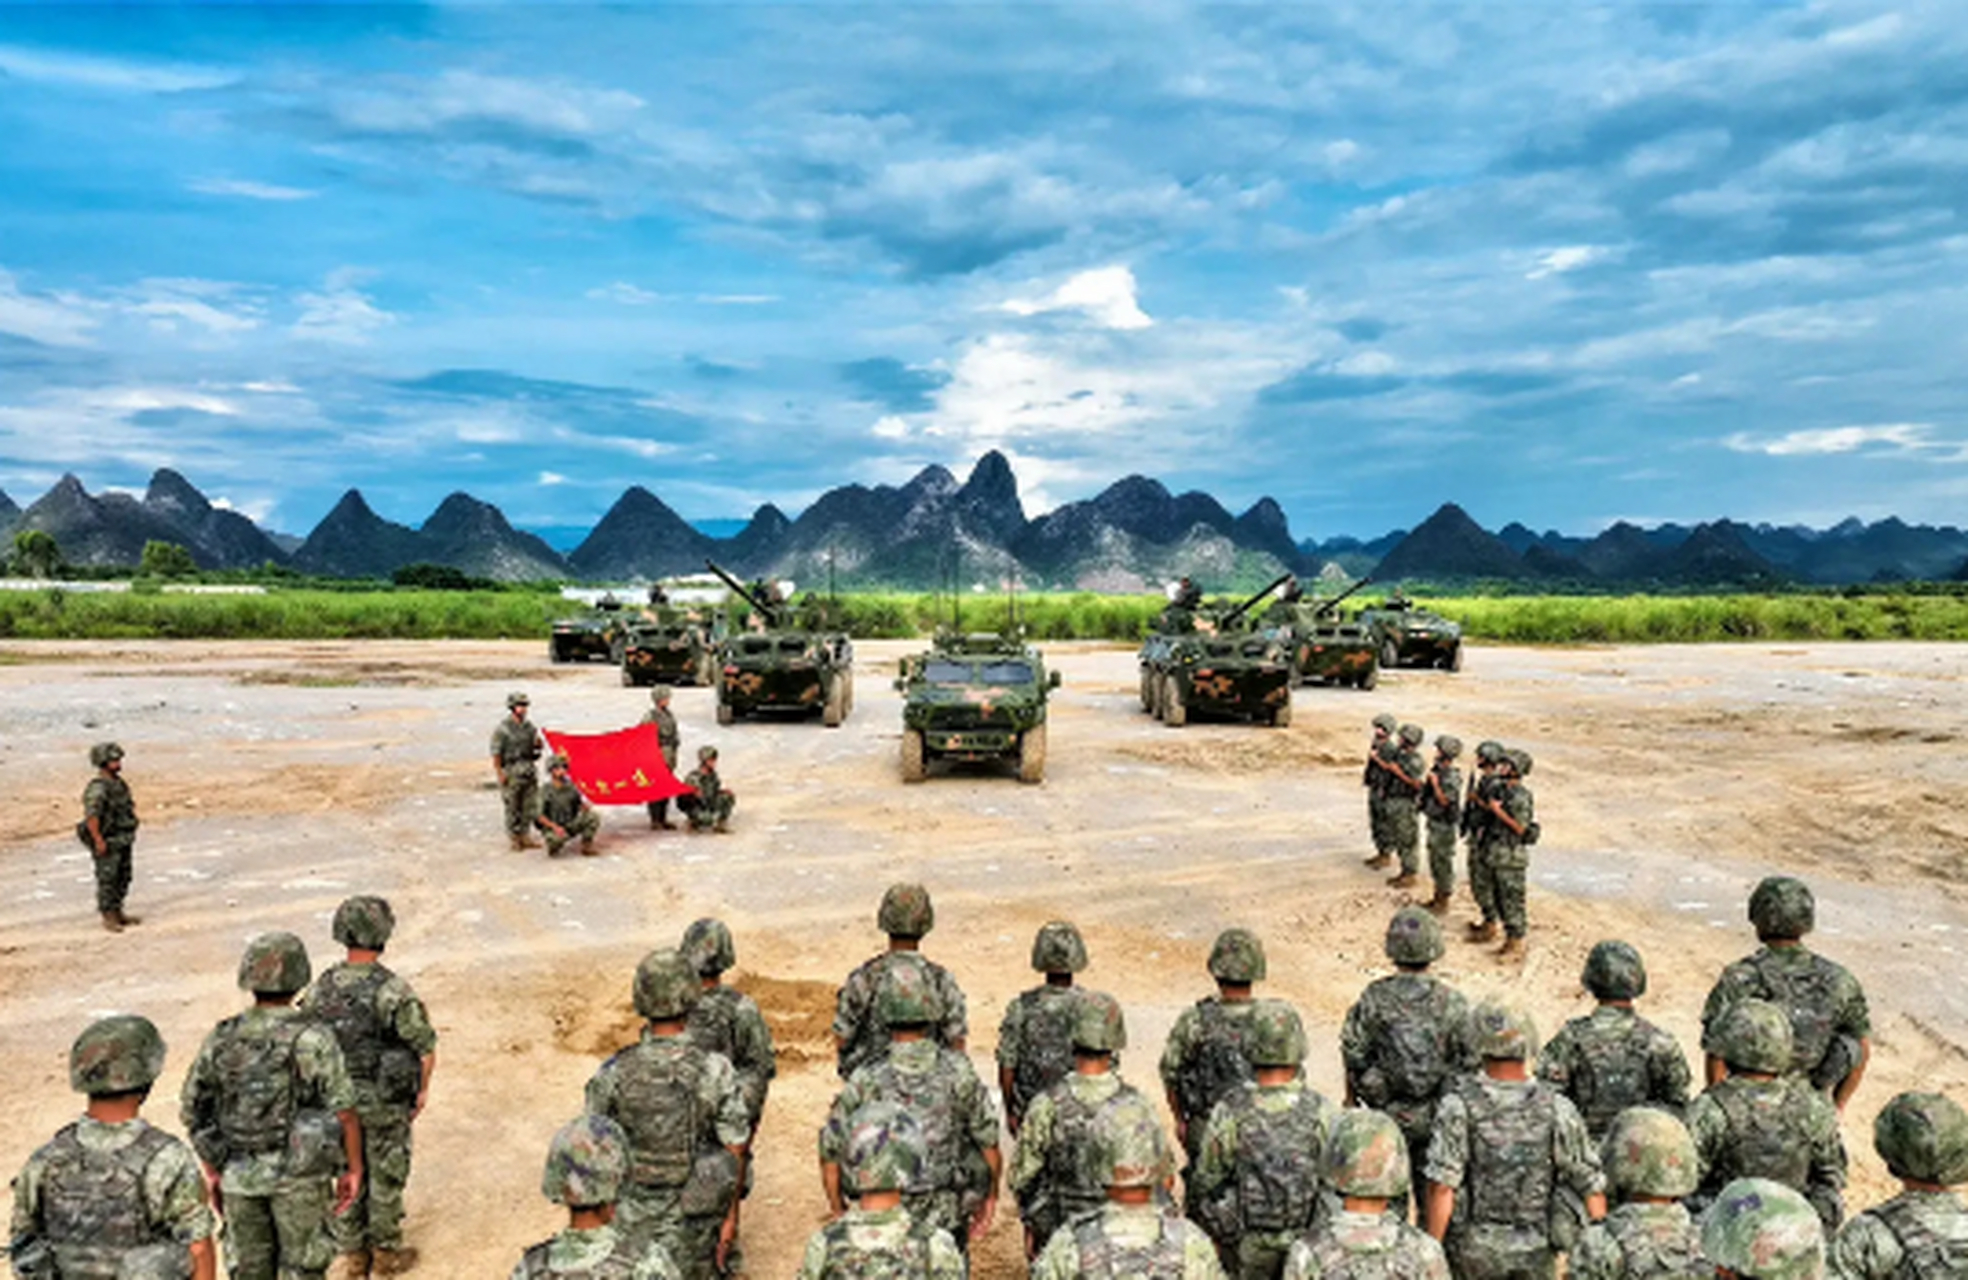 盛夏时节,第74集团军白台山劲旅在野外驻训场上举行了授枪仪式